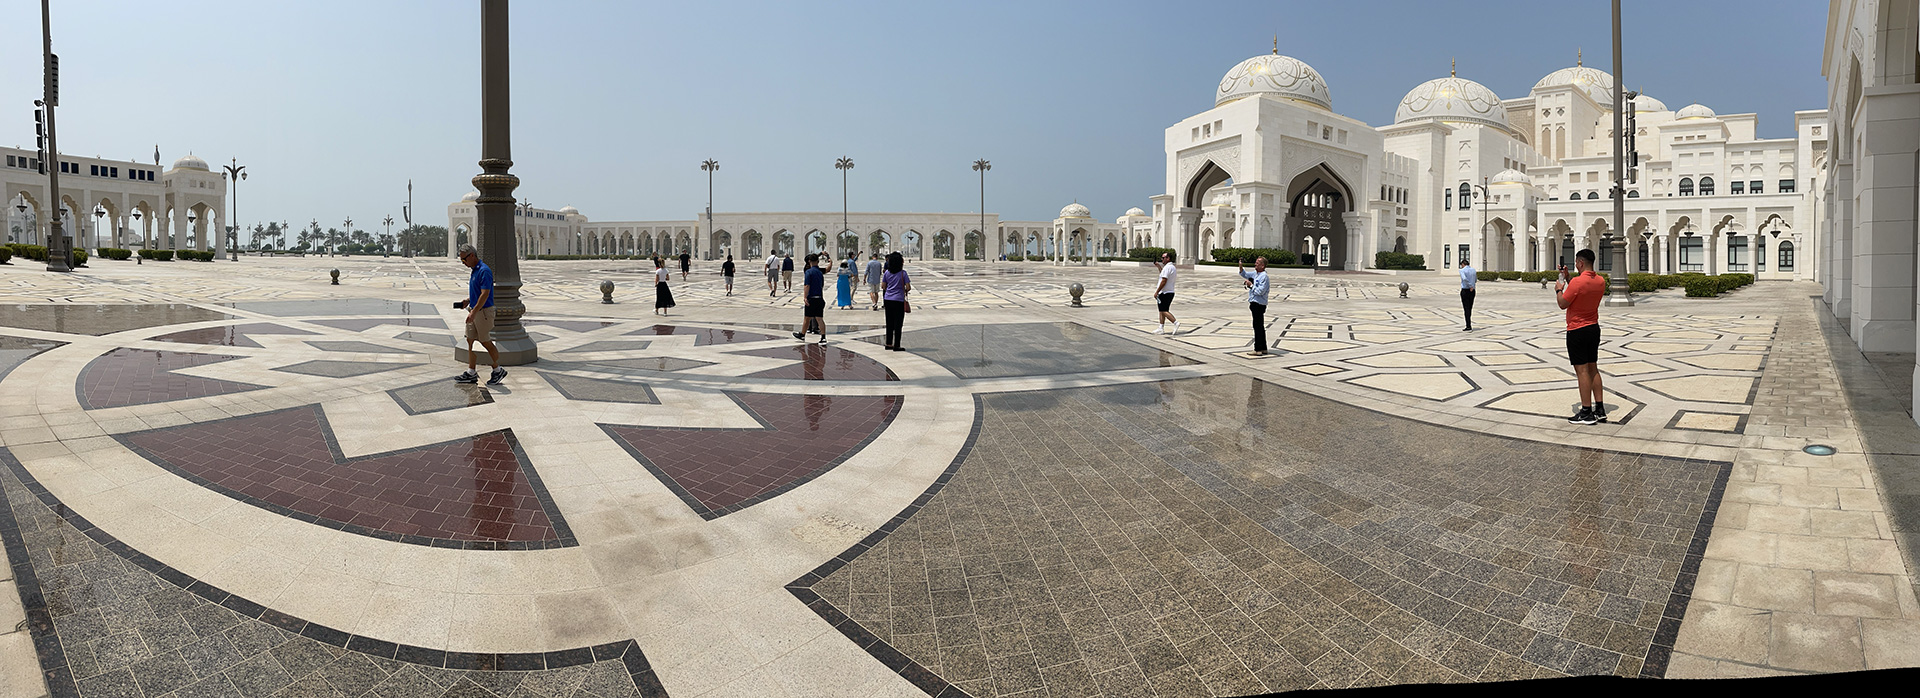 mosque square